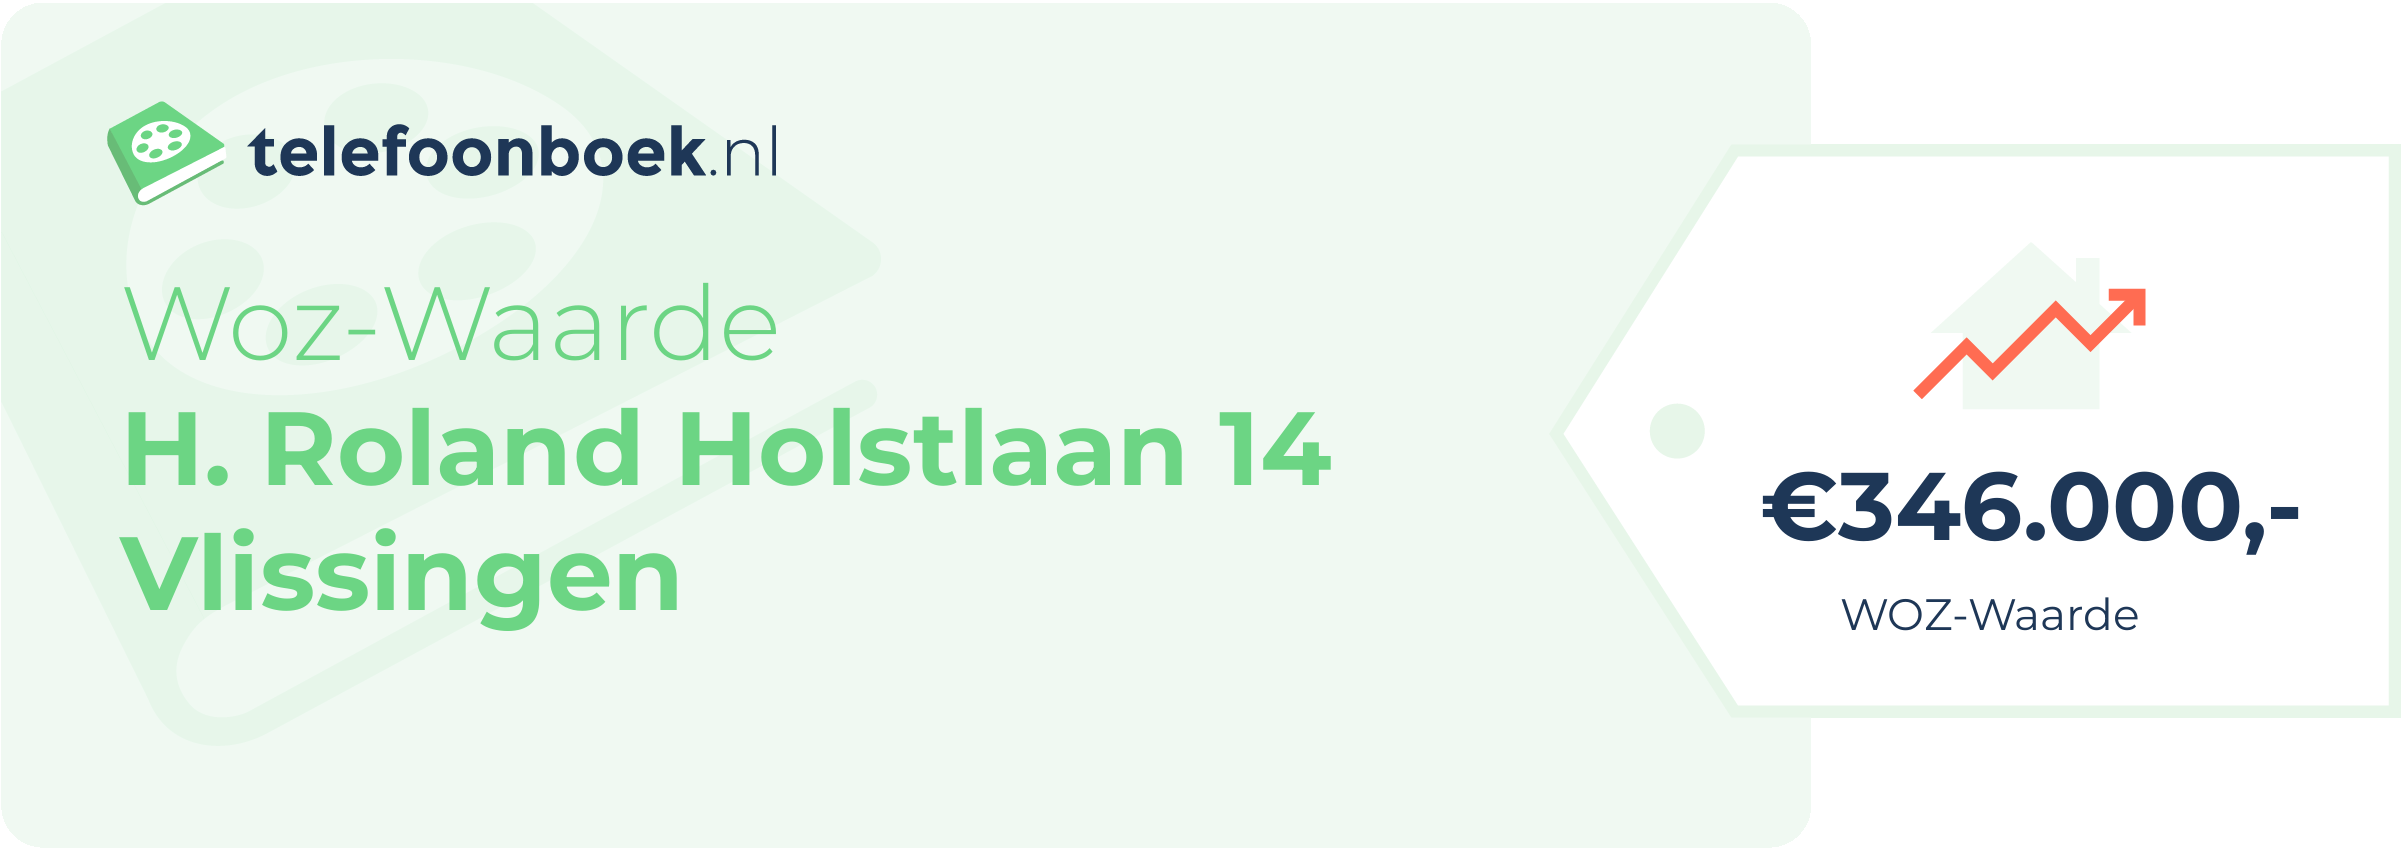 WOZ-waarde H. Roland Holstlaan 14 Vlissingen